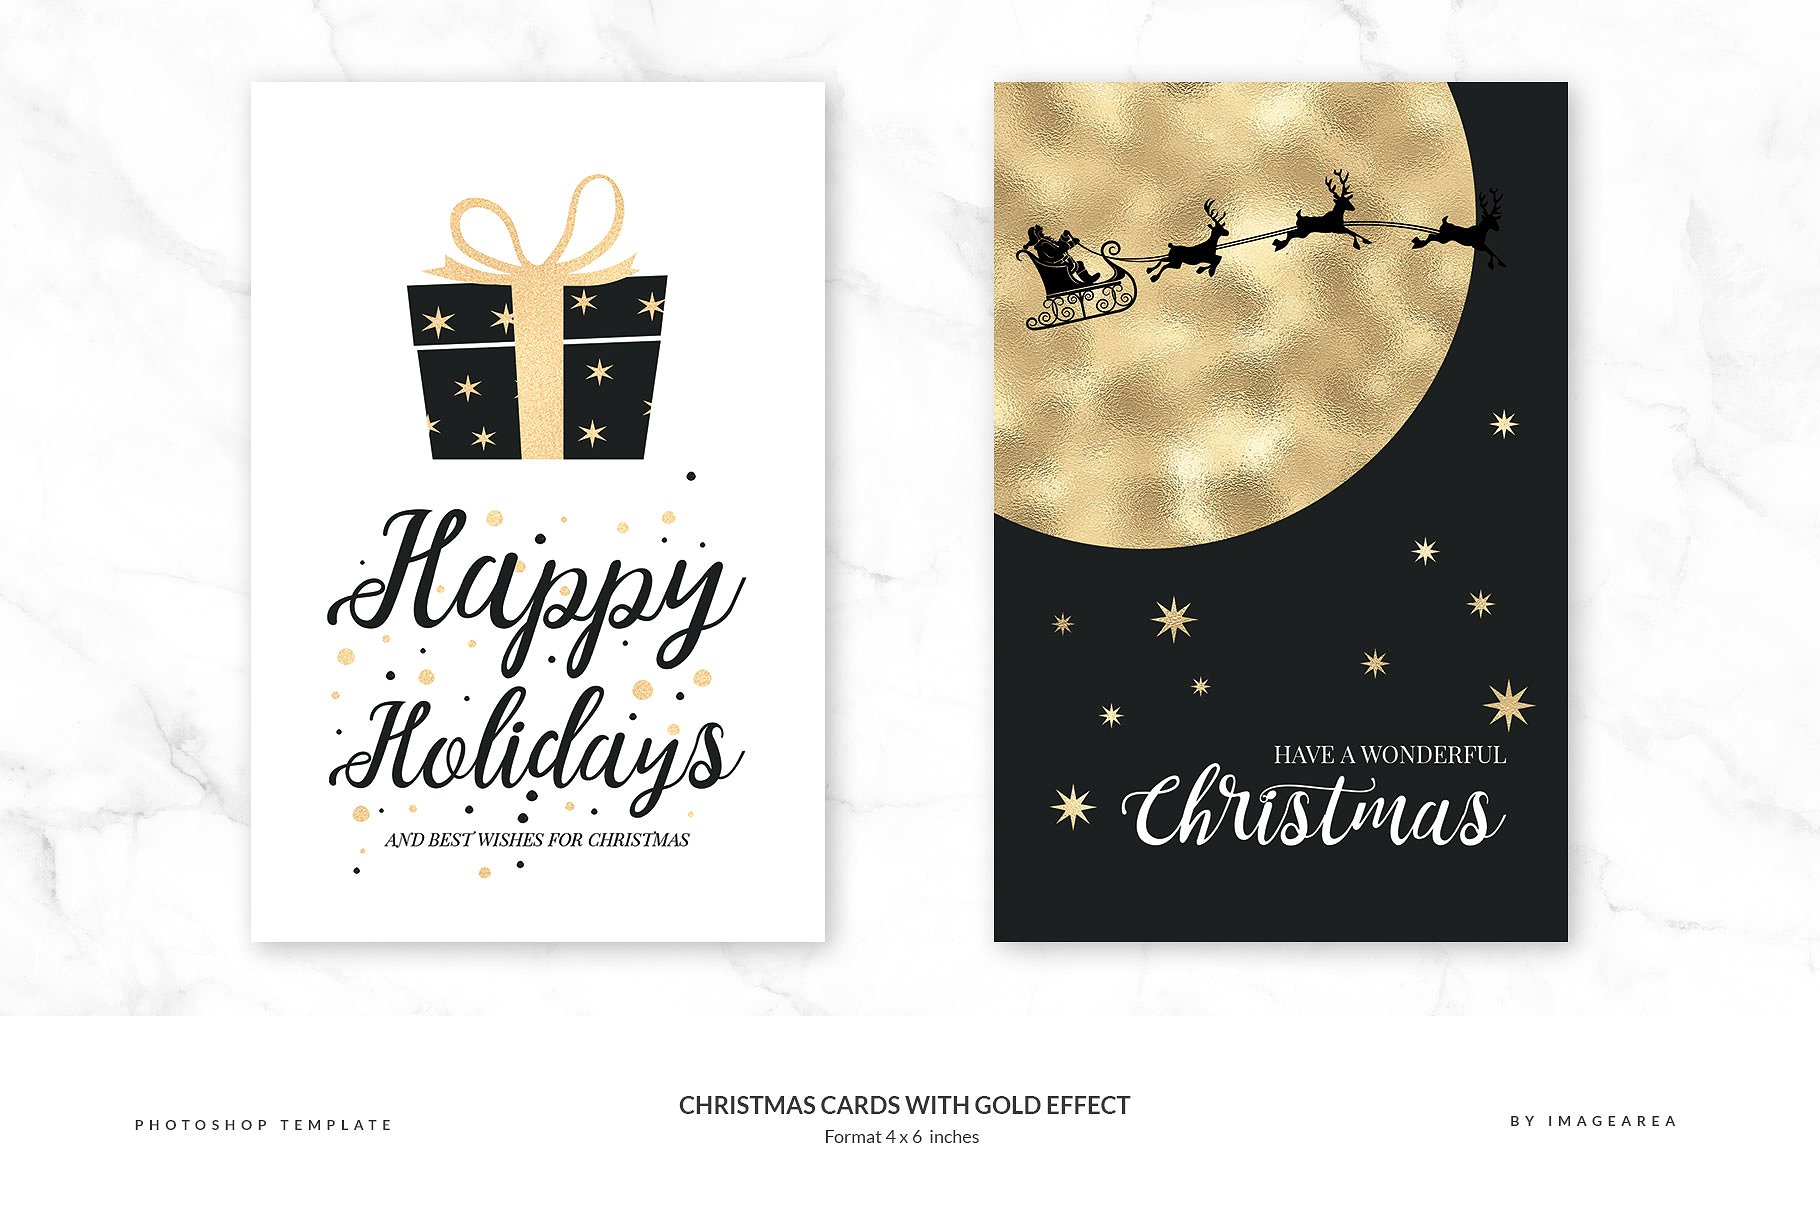 金箔装饰圣诞节主题贺卡模板 Christmas Cards with Gold Effect插图(1)